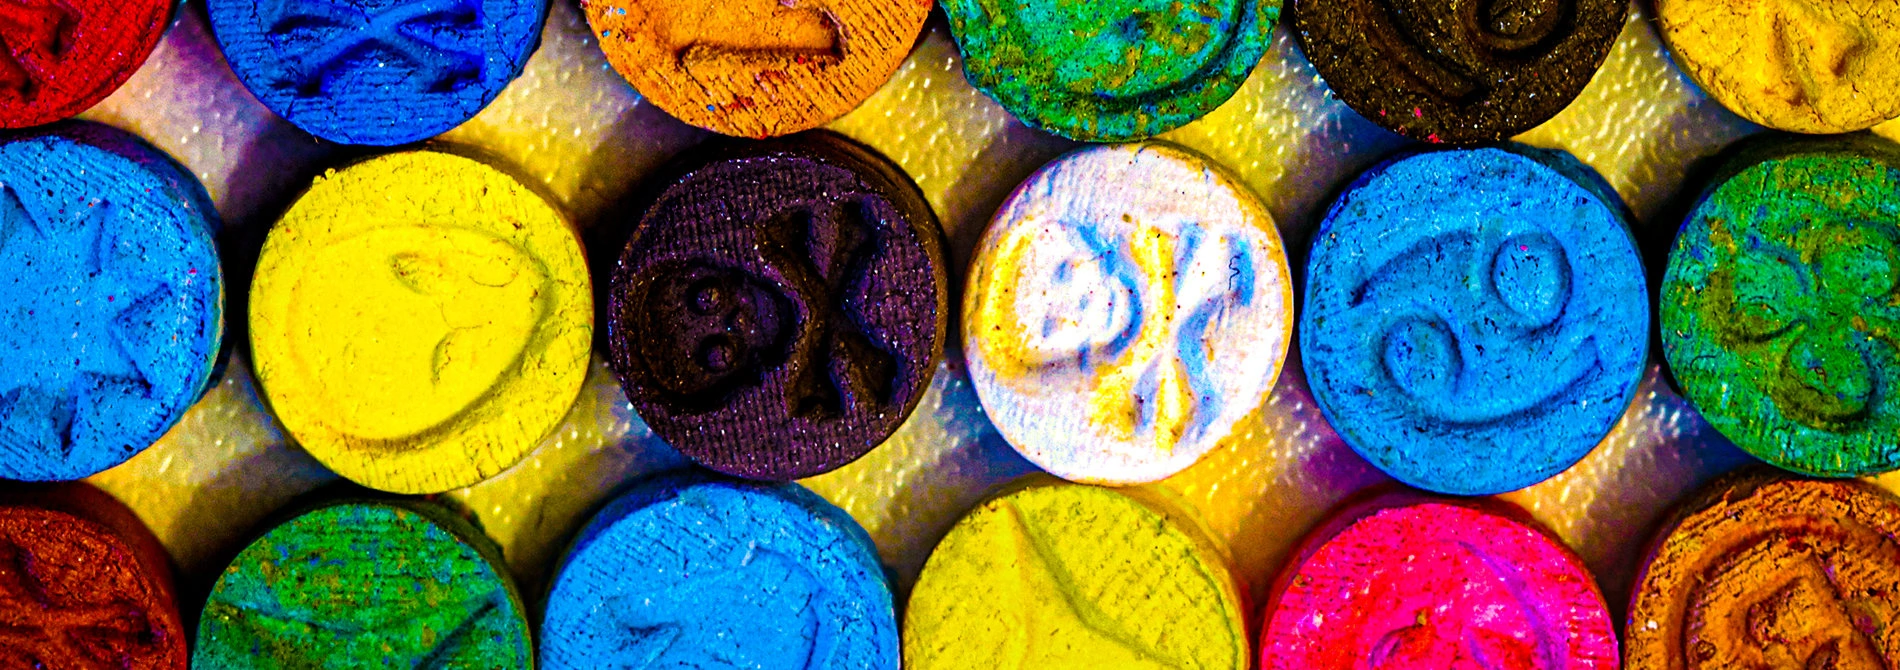 Is MDMA Dangerous?